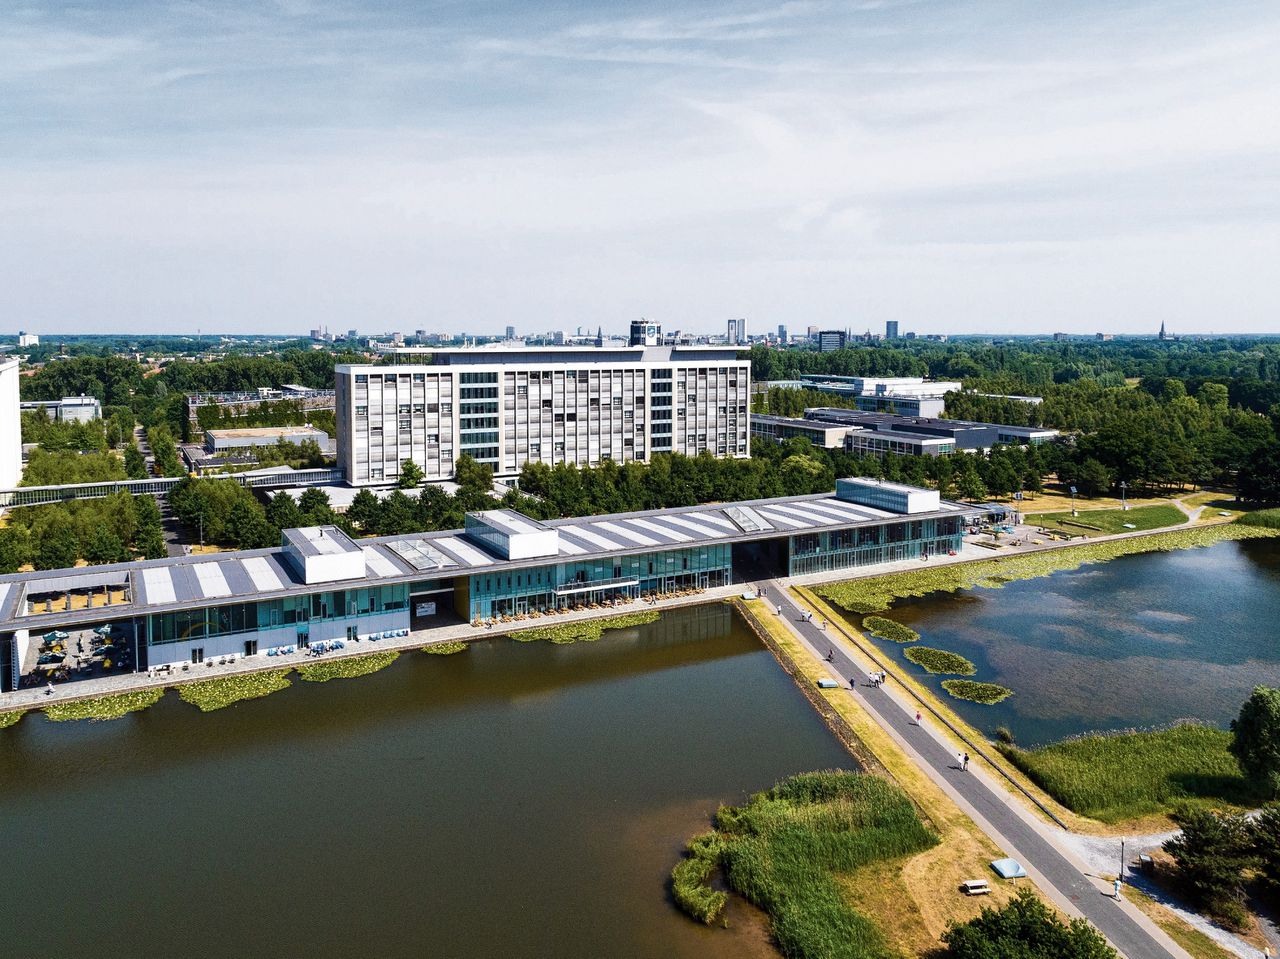 Het voormalige Philps Natuurkundig laboratorium (NatLab) aan de zuidkant van Eindhoven groeide uit tot de High Tech Campus.